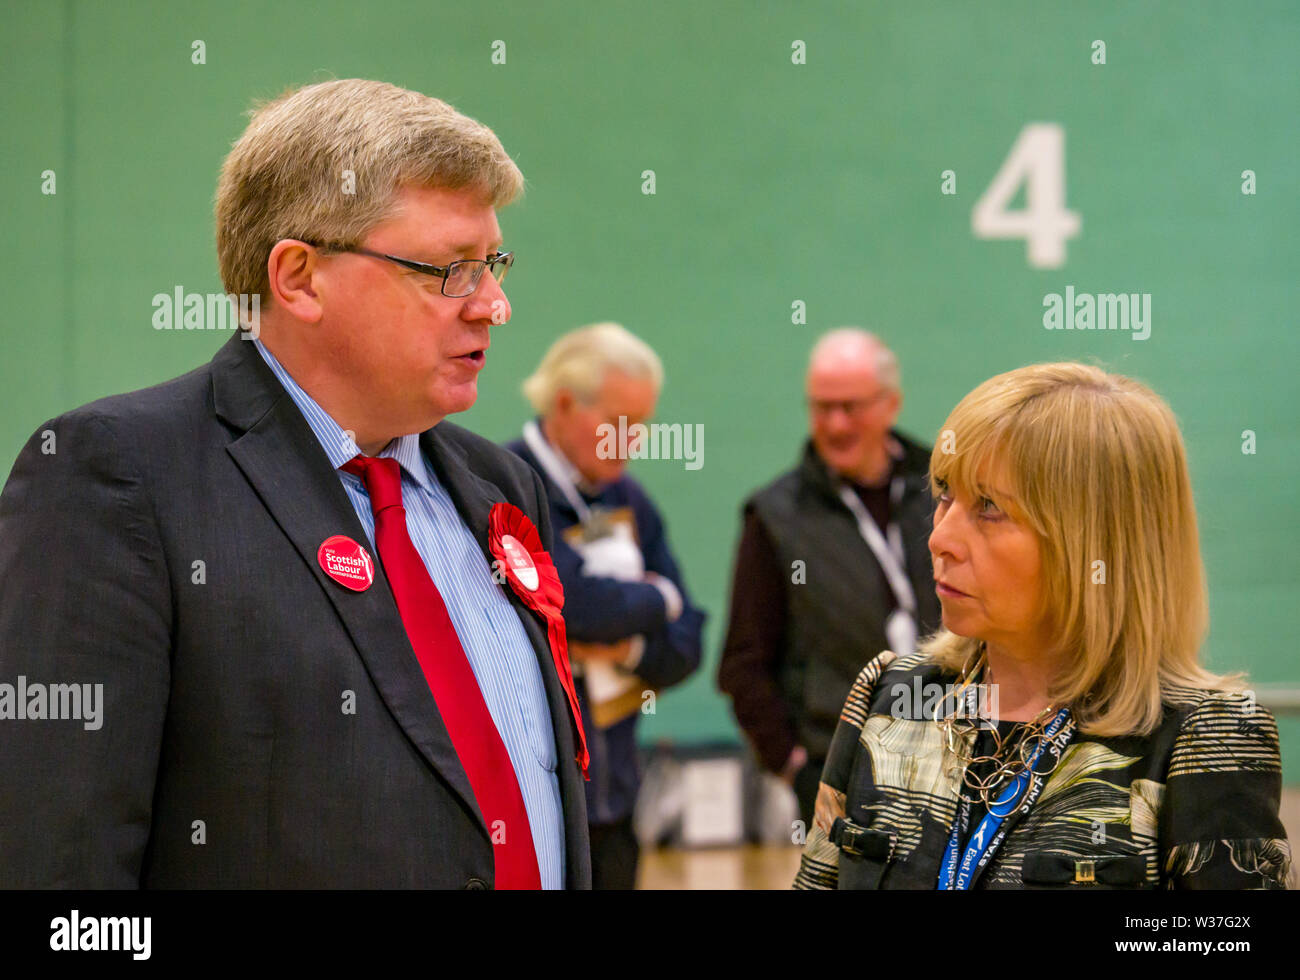 Martin Whitfield député travailliste et Angela Leitch, directrice générale, East Lothian Council au décompte partiel de Haddington et Lammermuir, mai 2019, Écosse, Royaume-Uni Banque D'Images